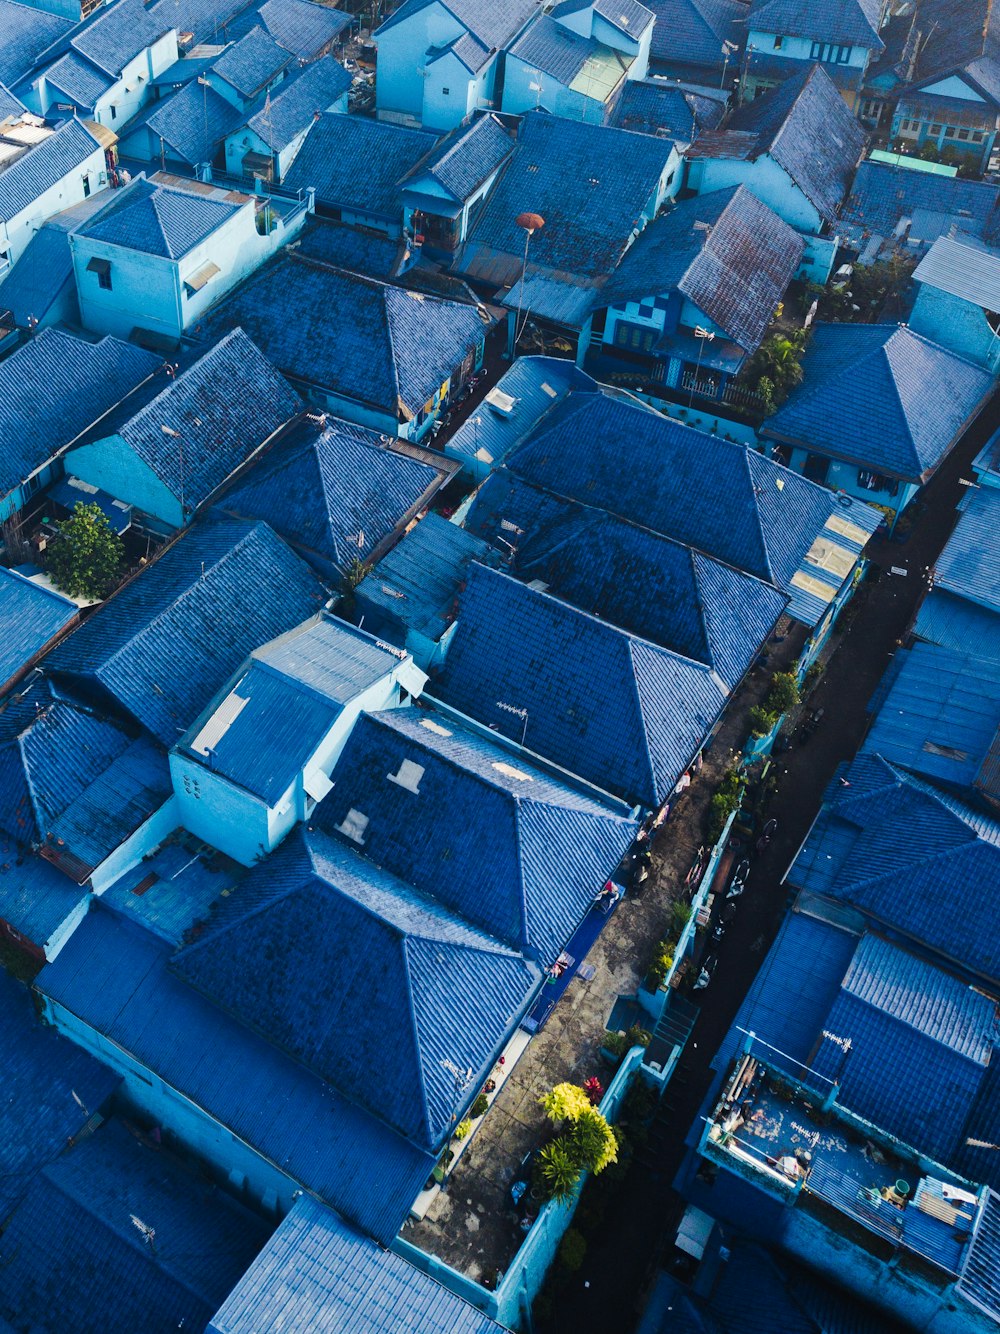 Fotografía aérea de casas de tejados azules durante el día